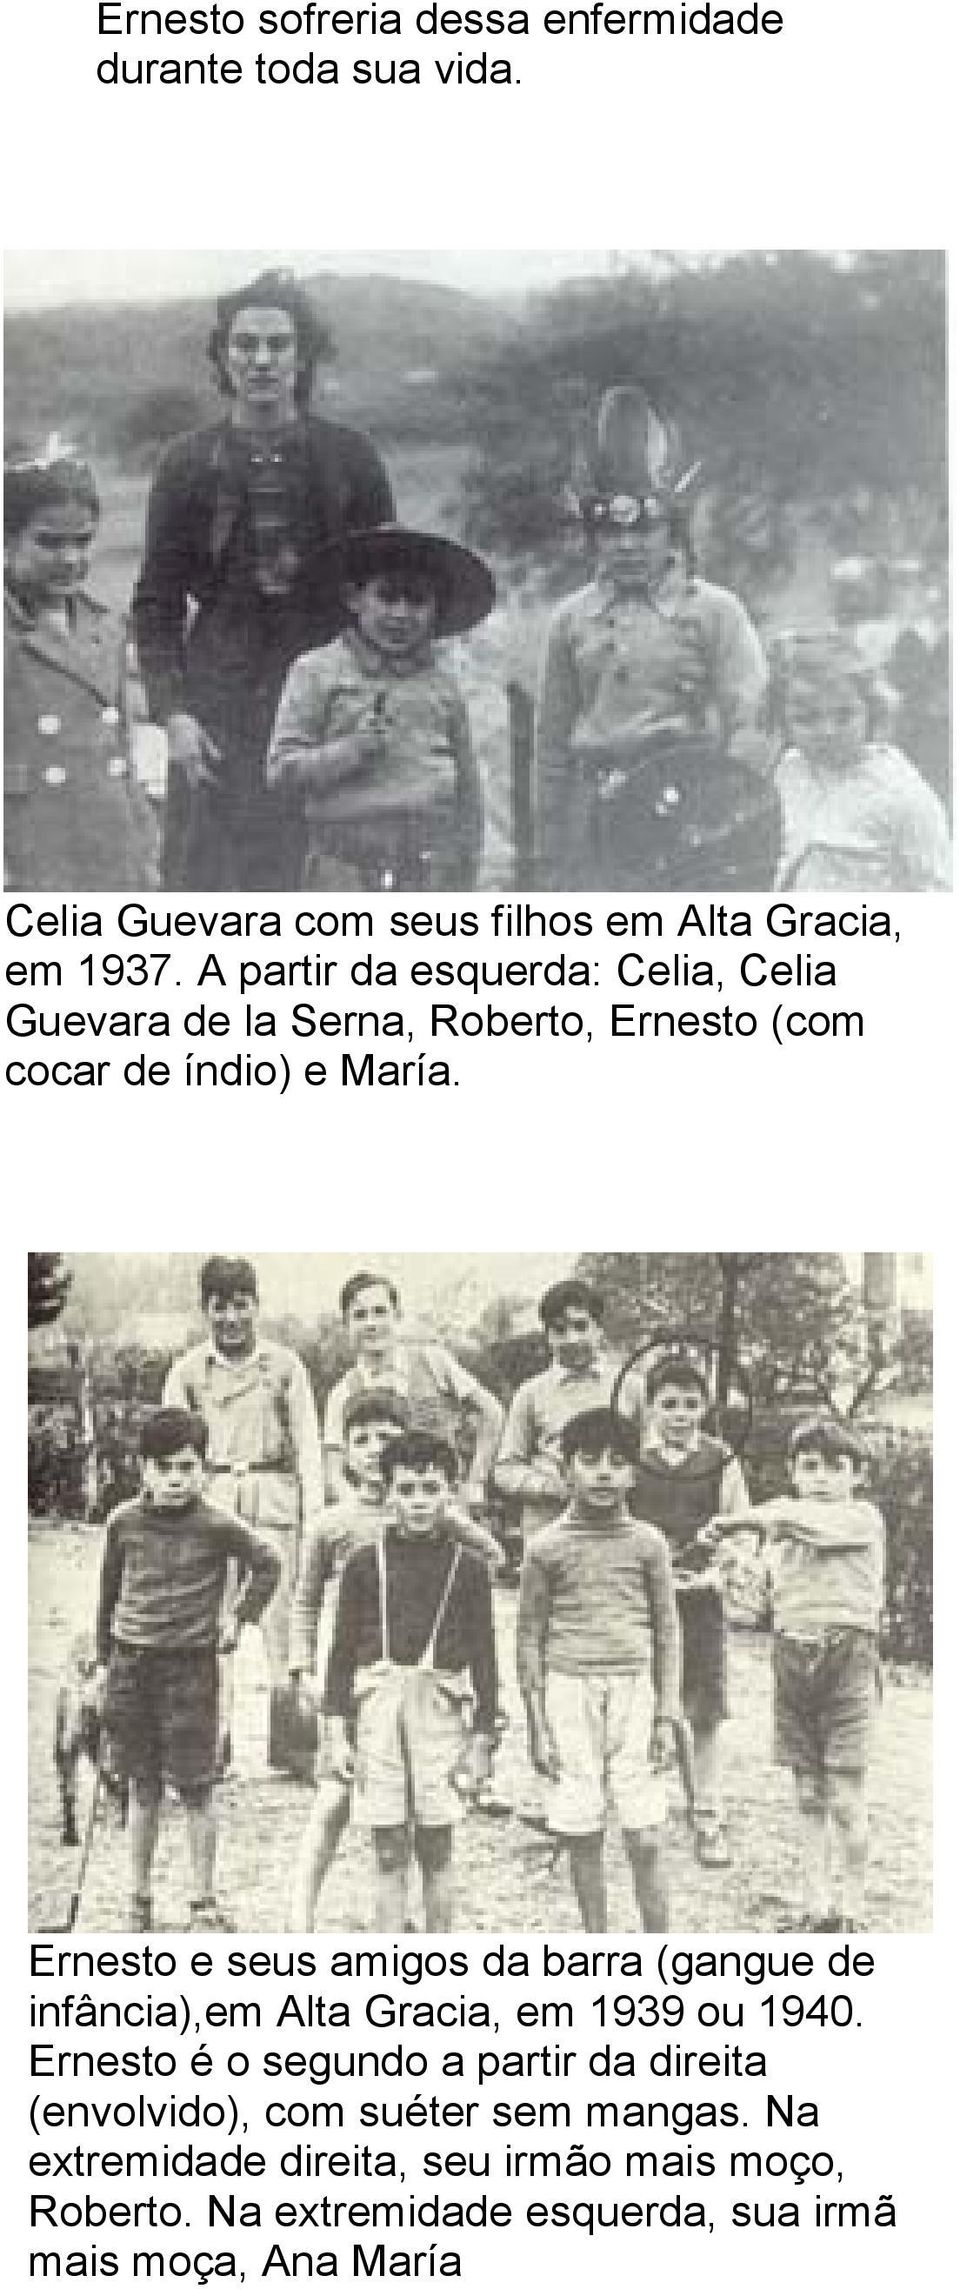 Ernesto e seus amigos da barra (gangue de infância),em Alta Gracia, em 1939 ou 1940.